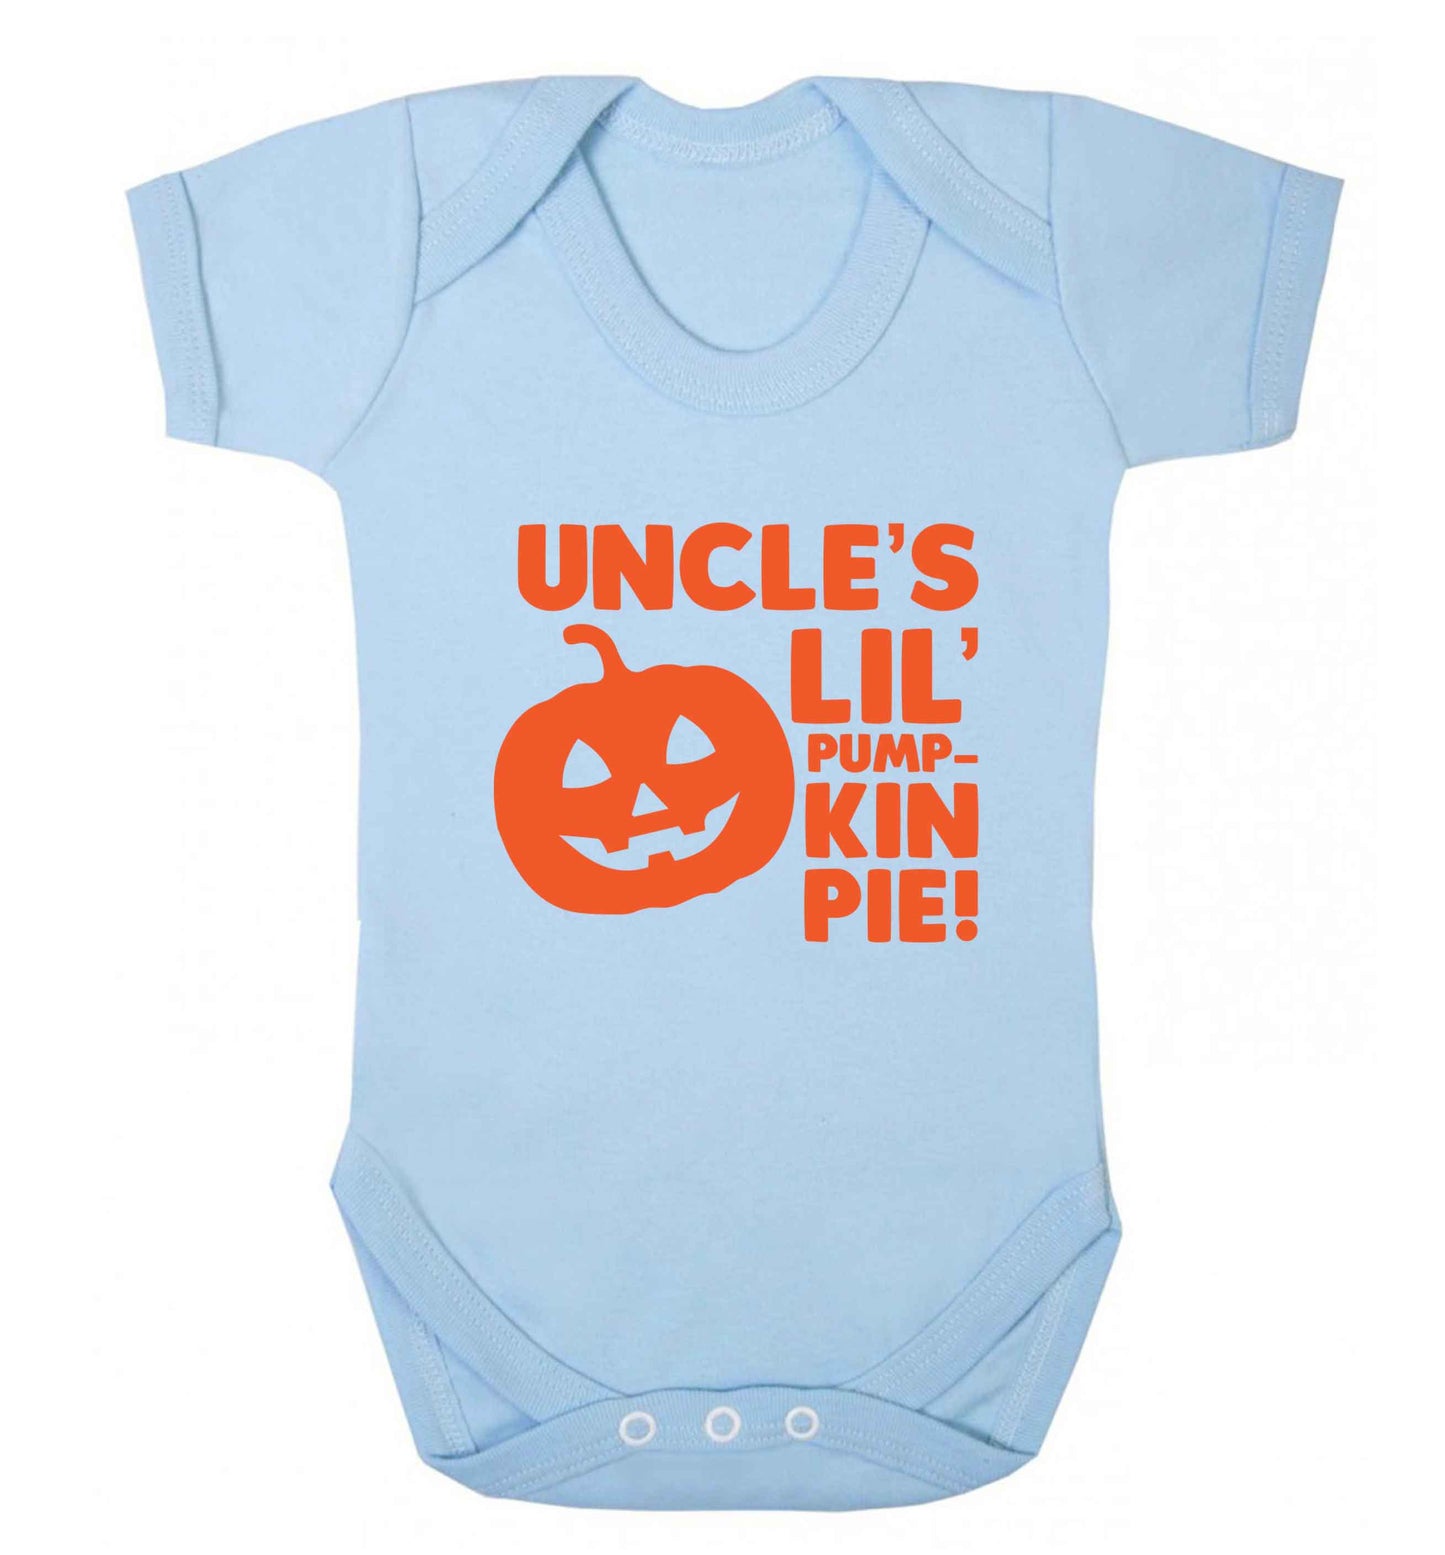 Uncle's lil' pumpkin pie baby vest pale blue 18-24 months